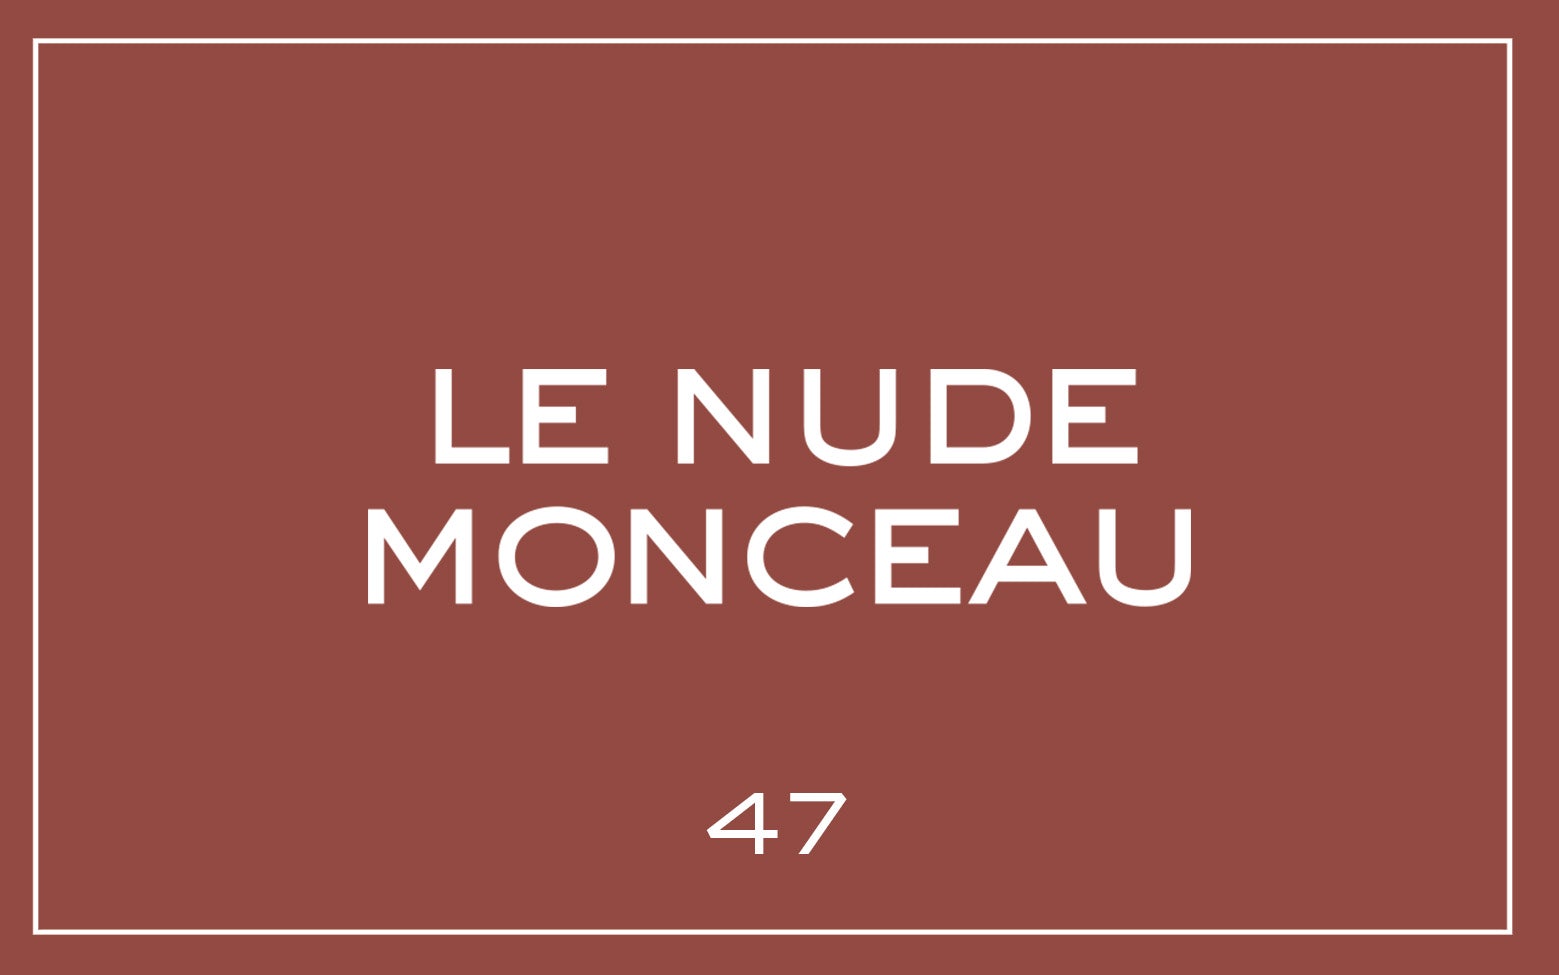 La bouche rouge Le Nude Monceau lipstick swatch with text